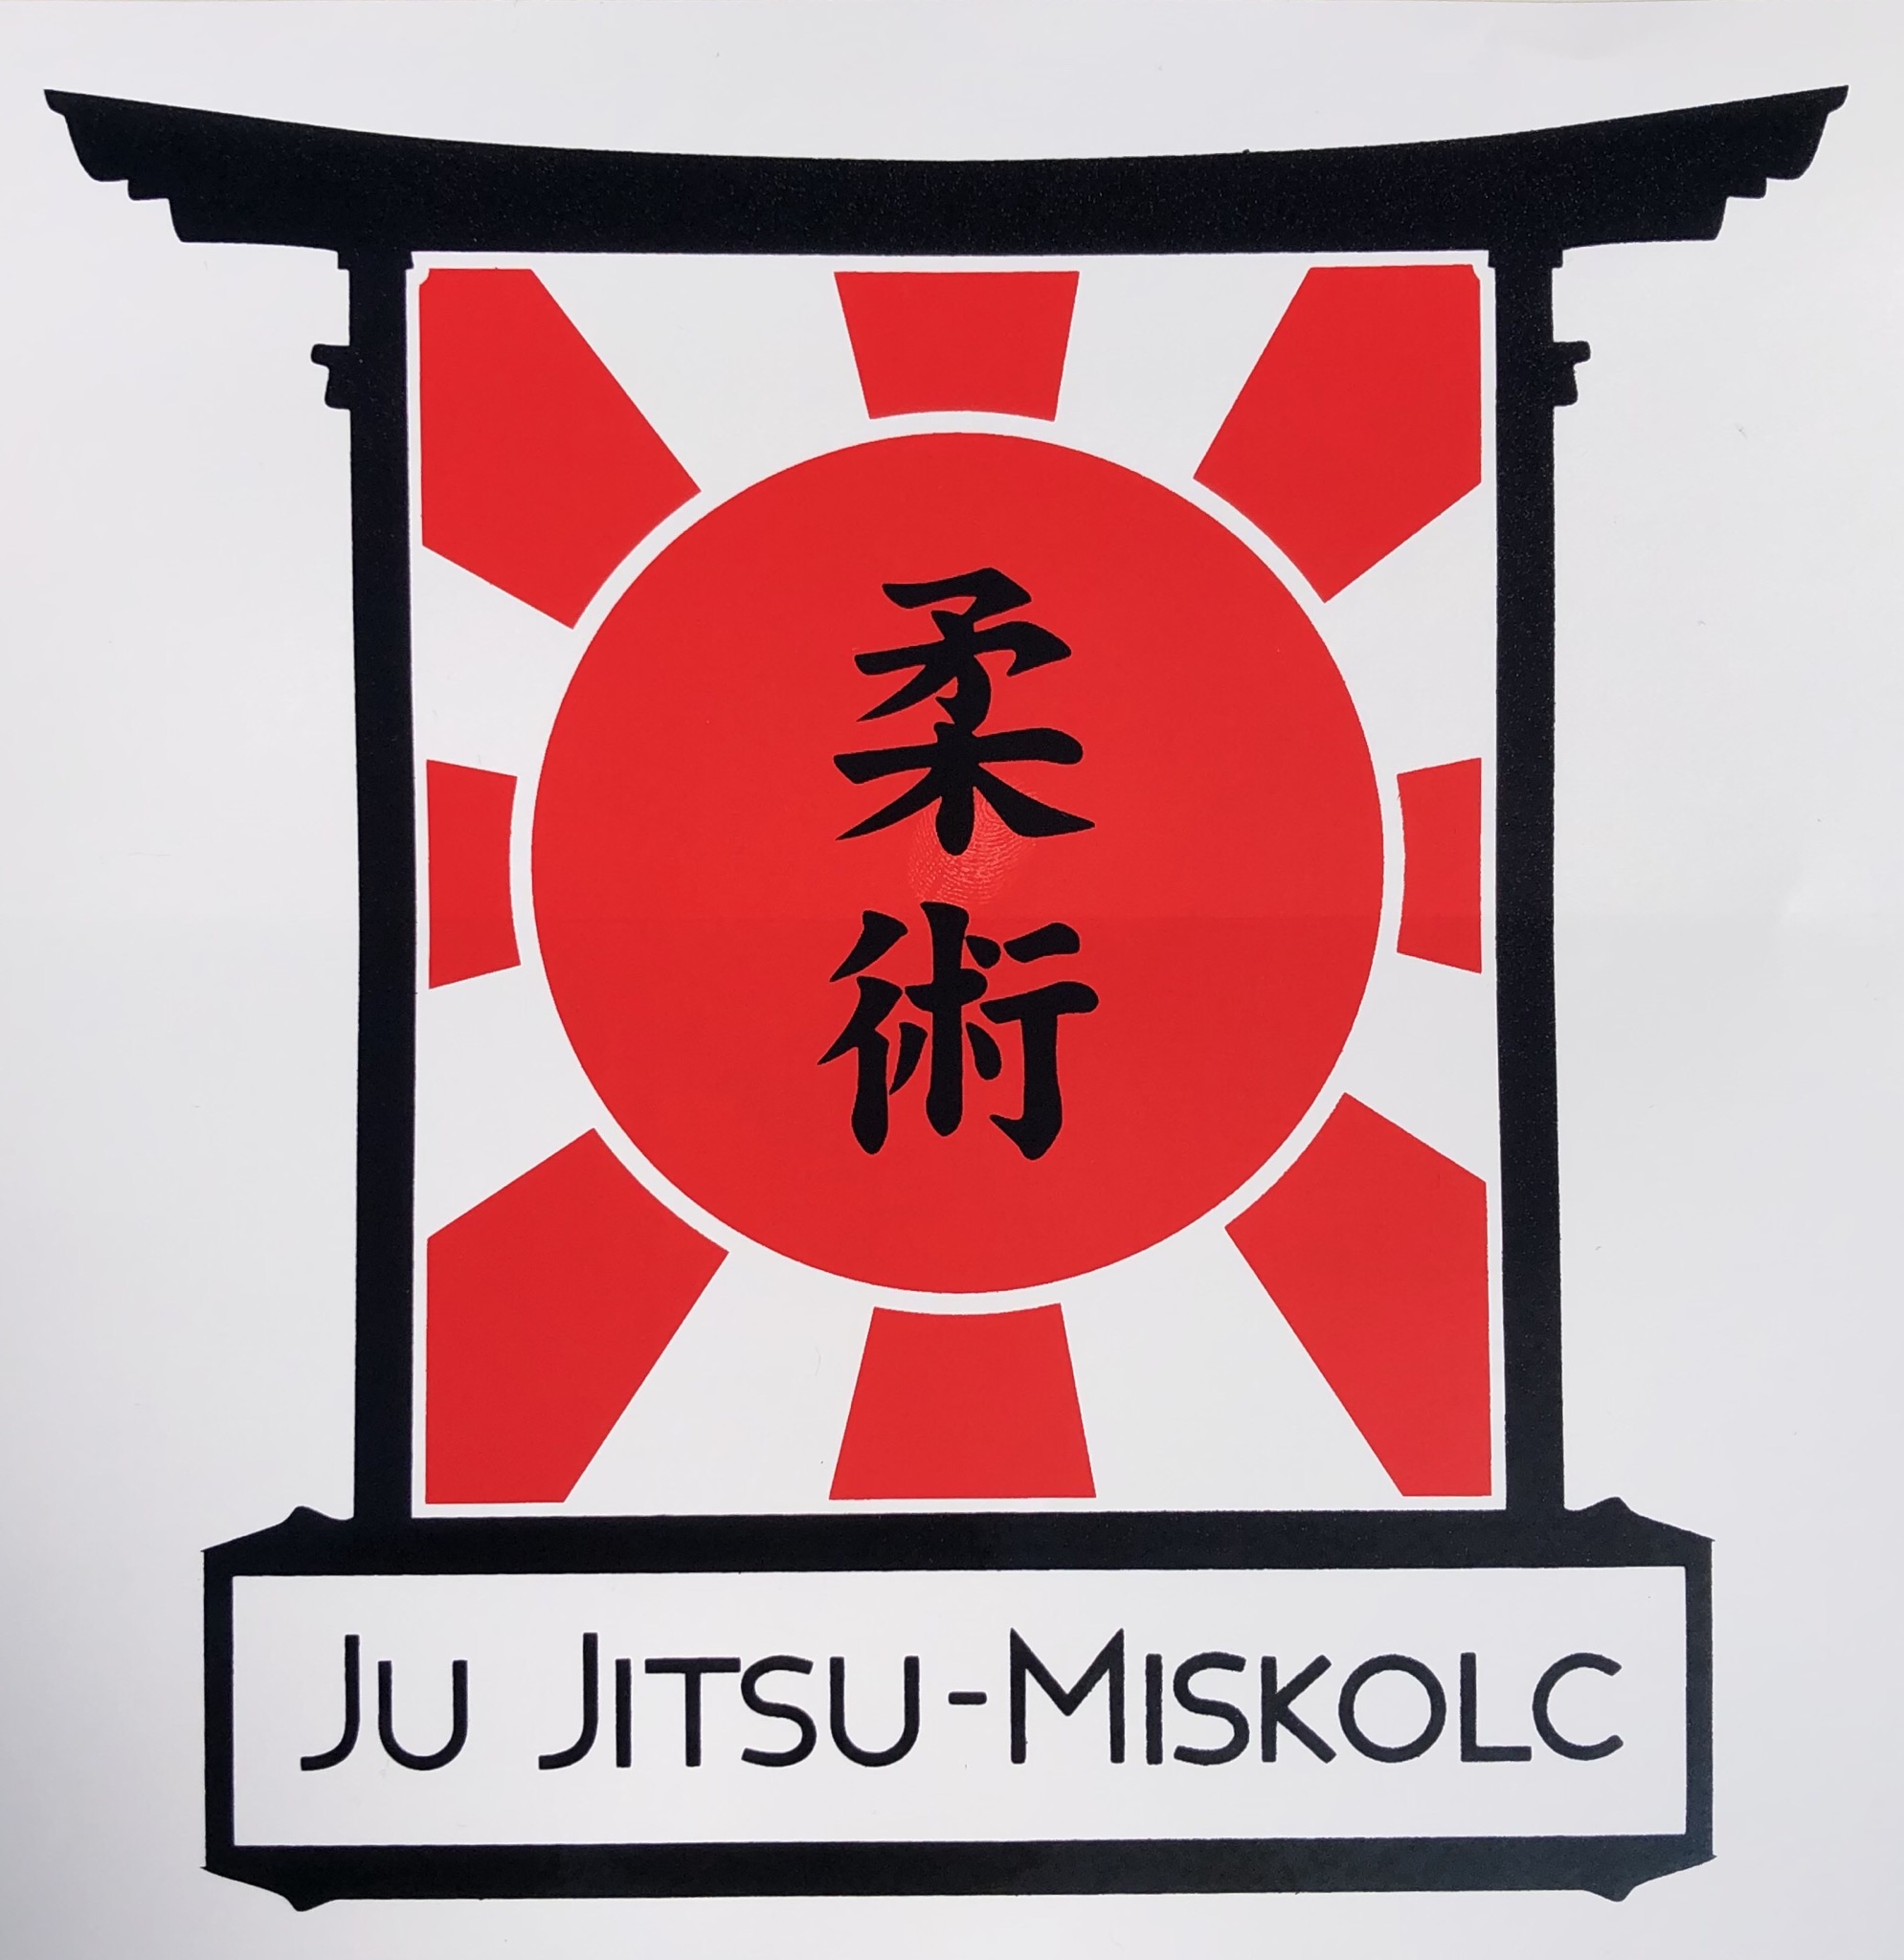 Miskolci Ju Jitsu Egyesület